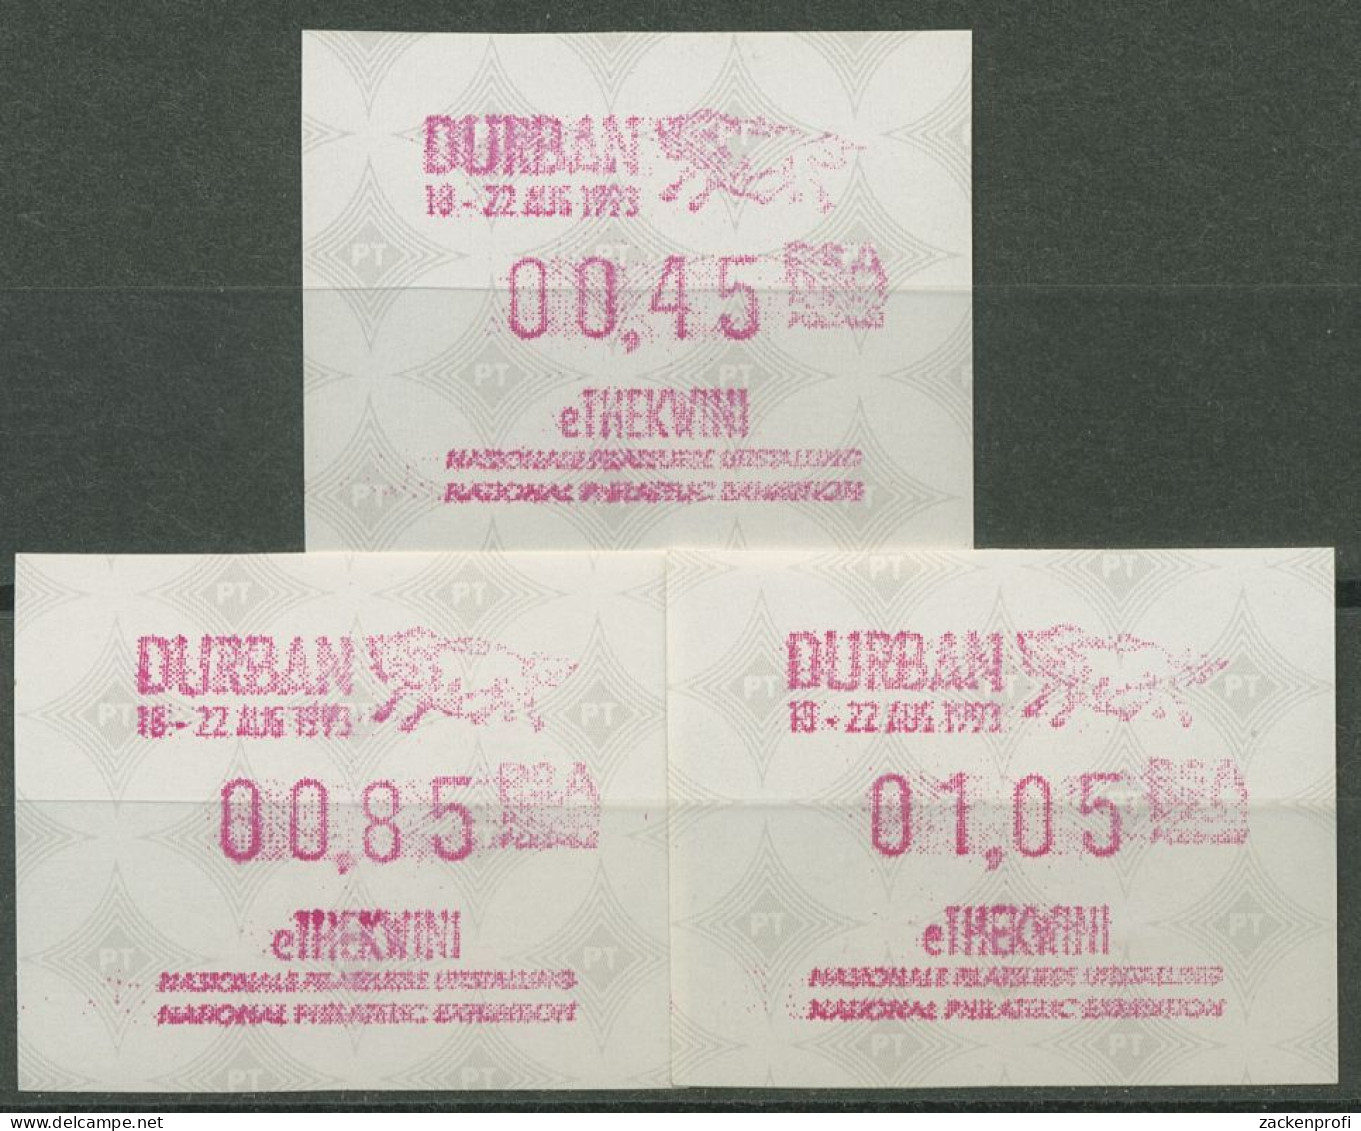 Südafrika ATM 1993 Austellung DURBAN, Satz 3 Werte ATM 12.2 S1 Postfrisch - Affrancature Meccaniche/Frama